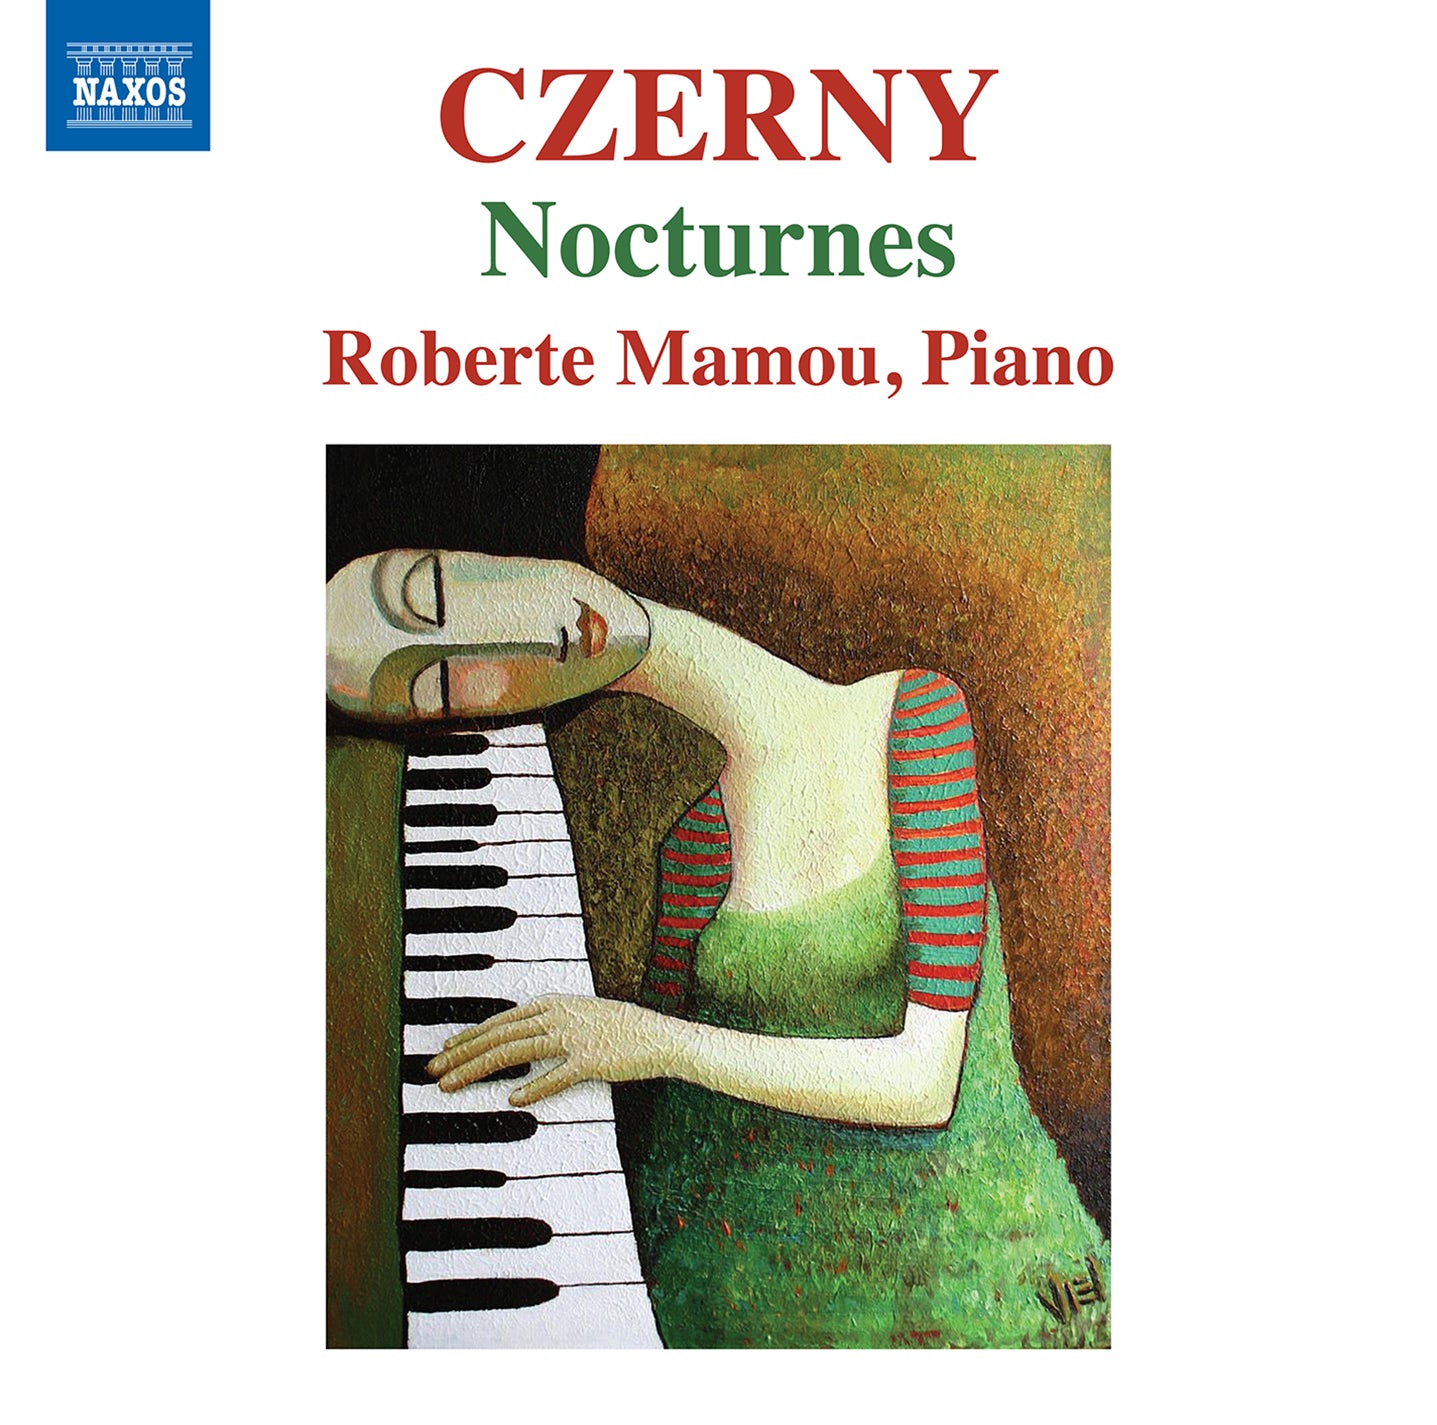 Czerny: Nocturnes, Opp. 368, 537 & 604 / Mamou